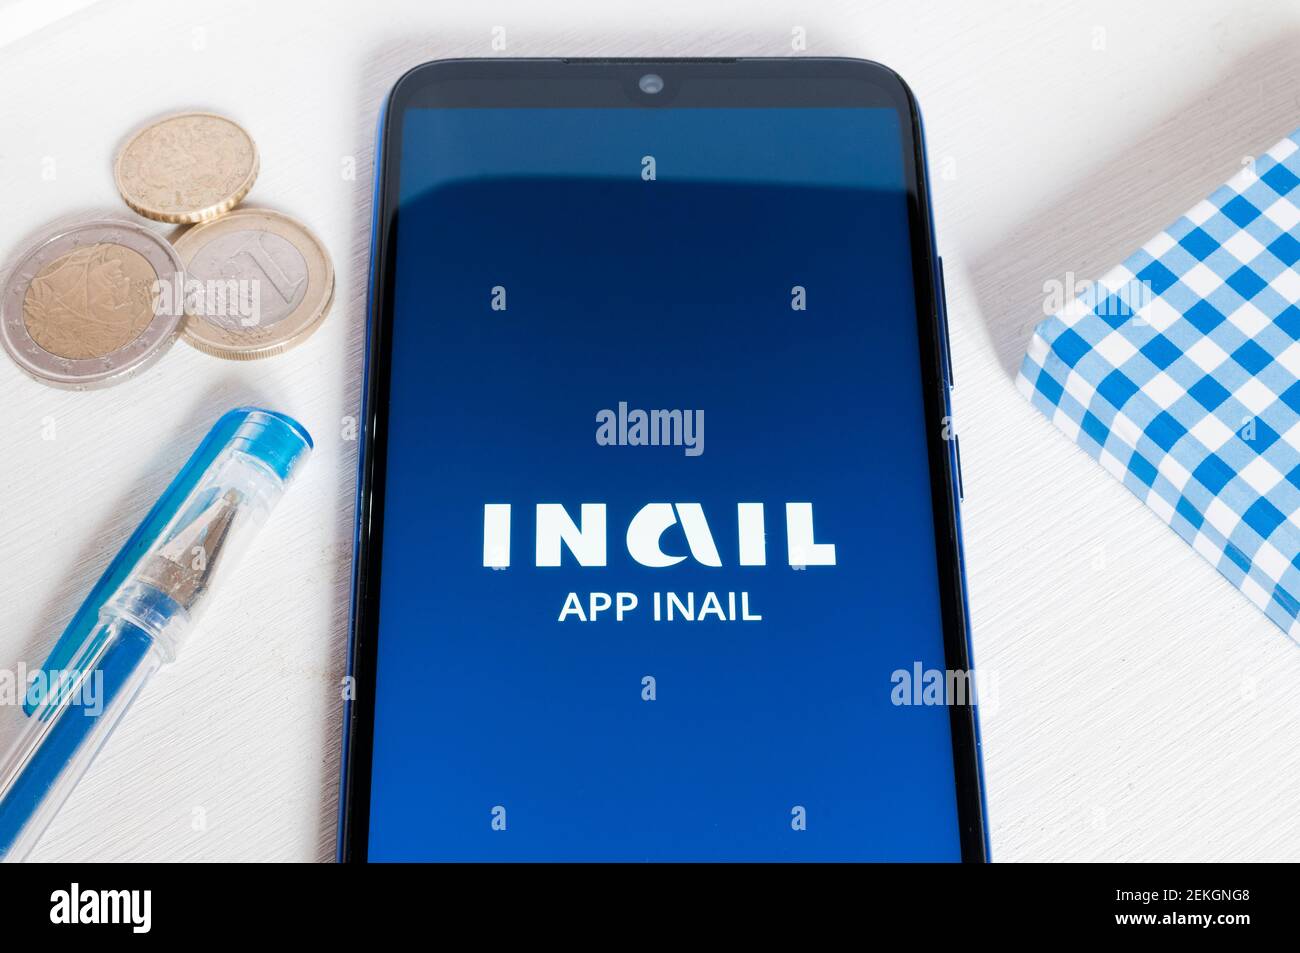 Carrara, Italia - 22 febbraio 2021 - smartphone con l'app INAIL (Istituto Nazionale Italiano per l'assicurazione contro gli infortuni sul lavoro) su un bianco Foto Stock